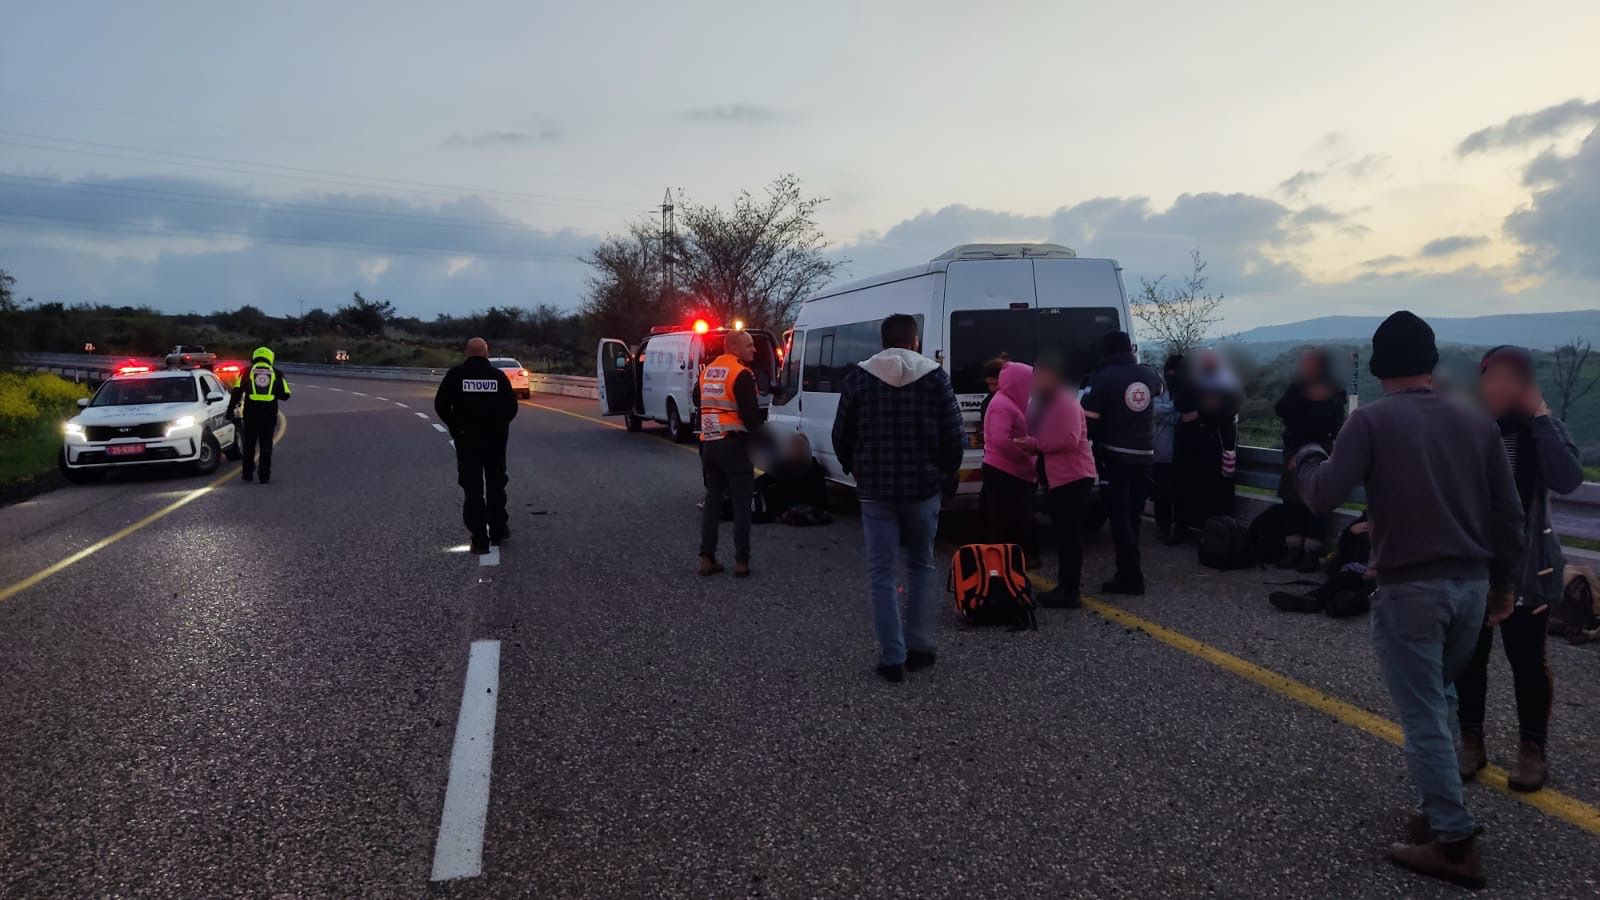 6 נשים נפצעו קל כתוצאה מהתנגשות רכב הסעות במעקה בטיחות בכביש 87 בסמוך לצומת יהודיה